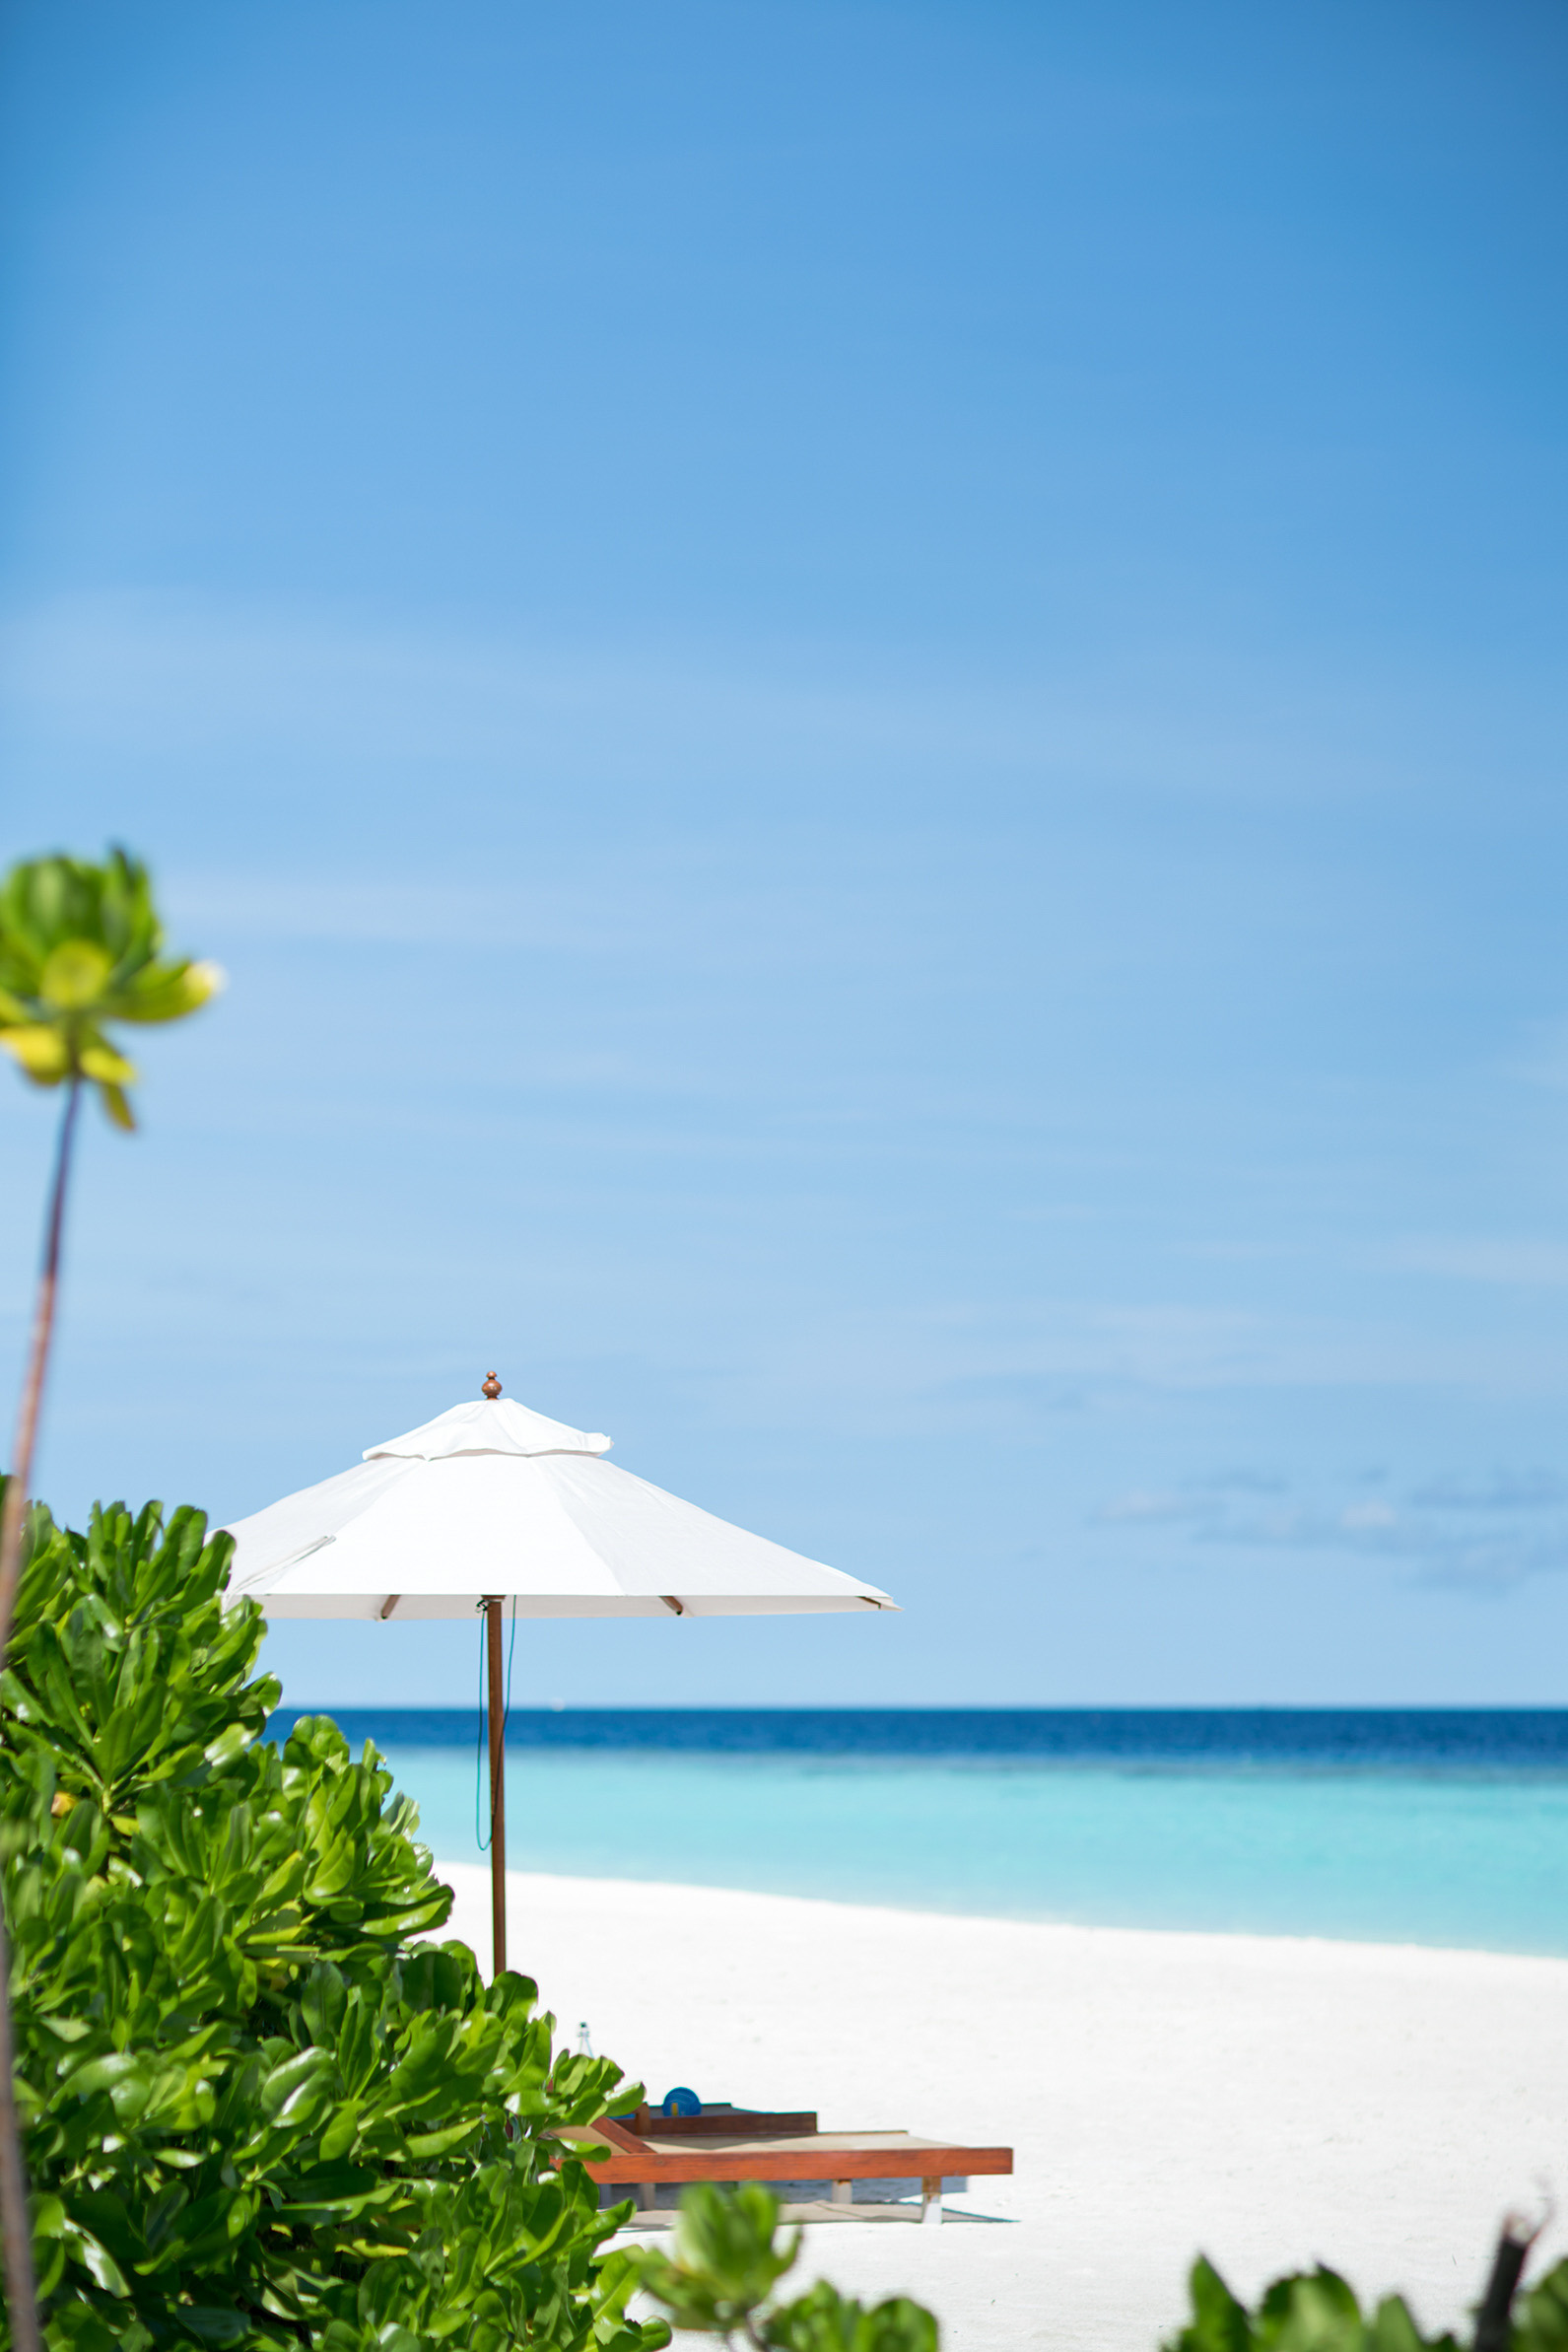 Anantara Kihavah Maldives Villas Resort - Baa Atoll, Maldives - Private Beach Ocean View